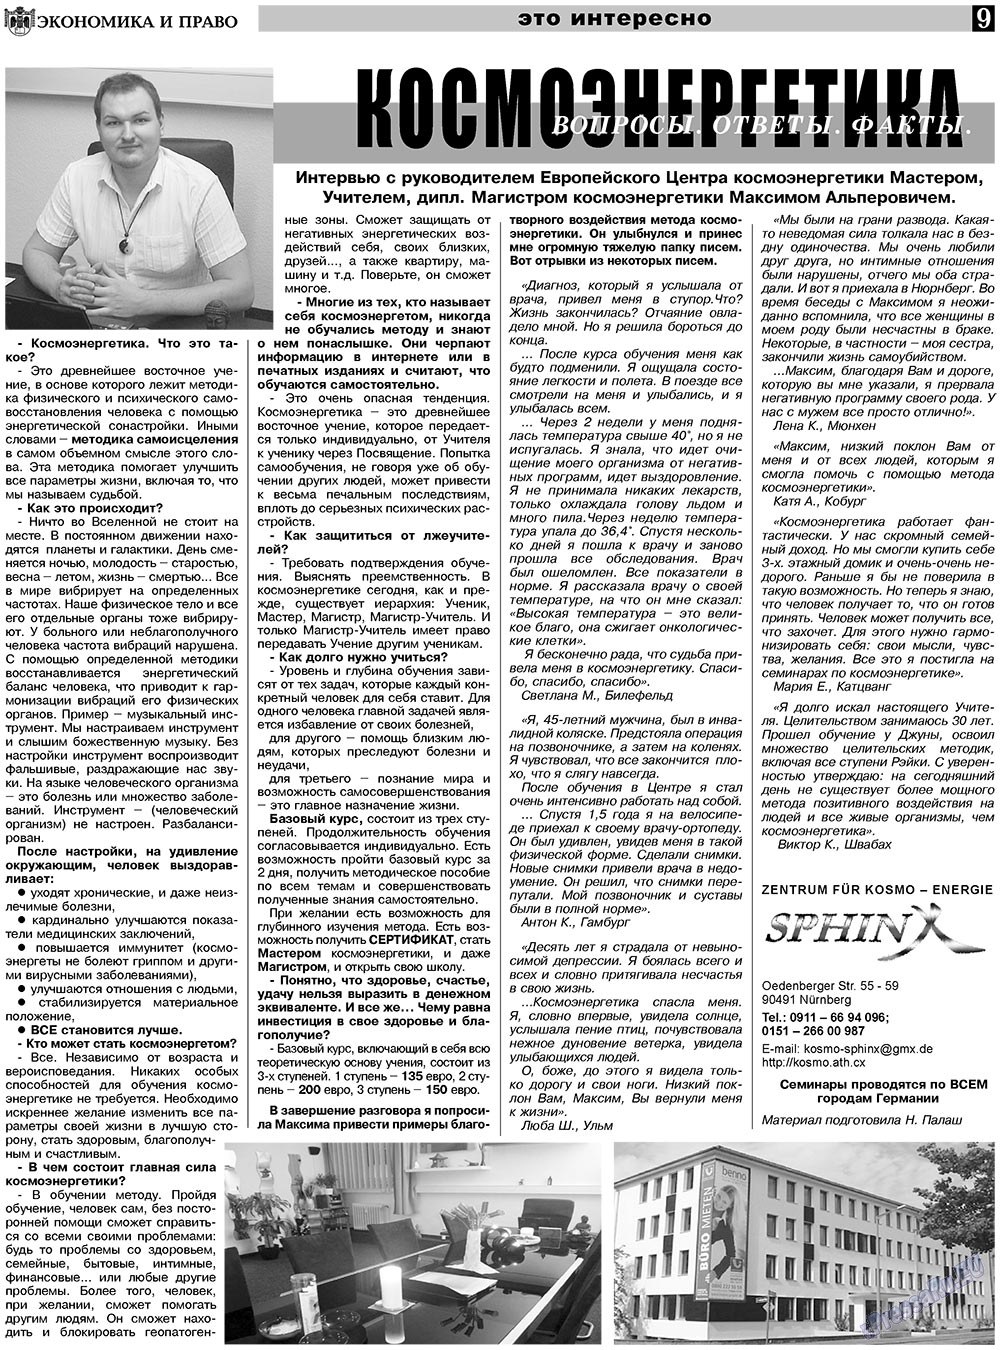 Экономика и право, газета. 2011 №1 стр.9